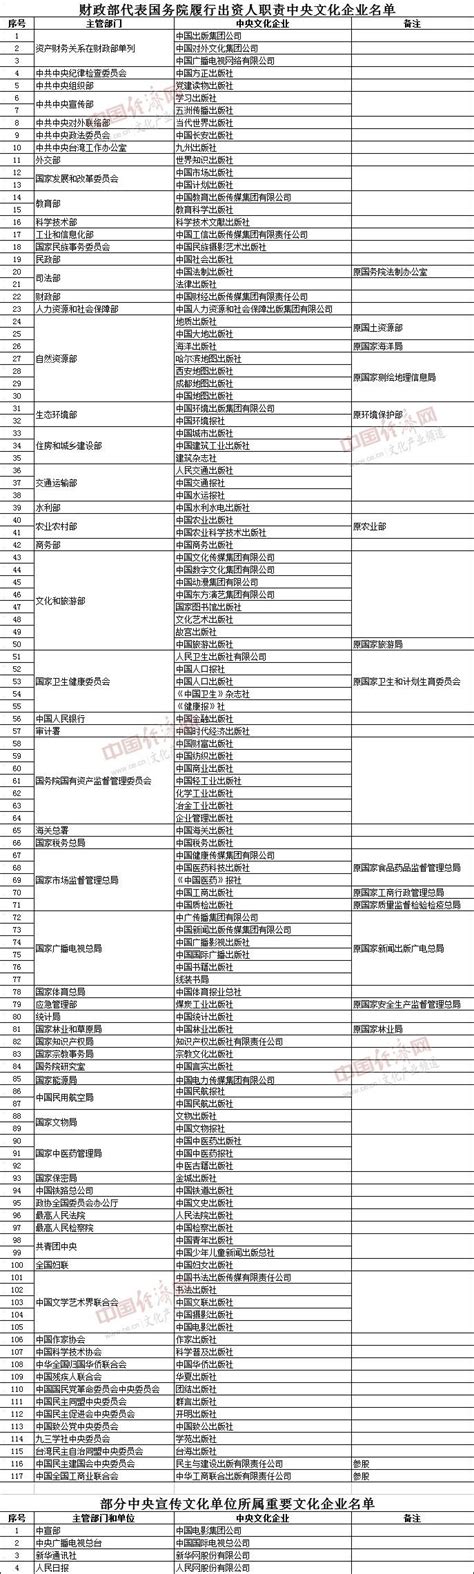 权威发布丨117家中央文化企业名单出炉